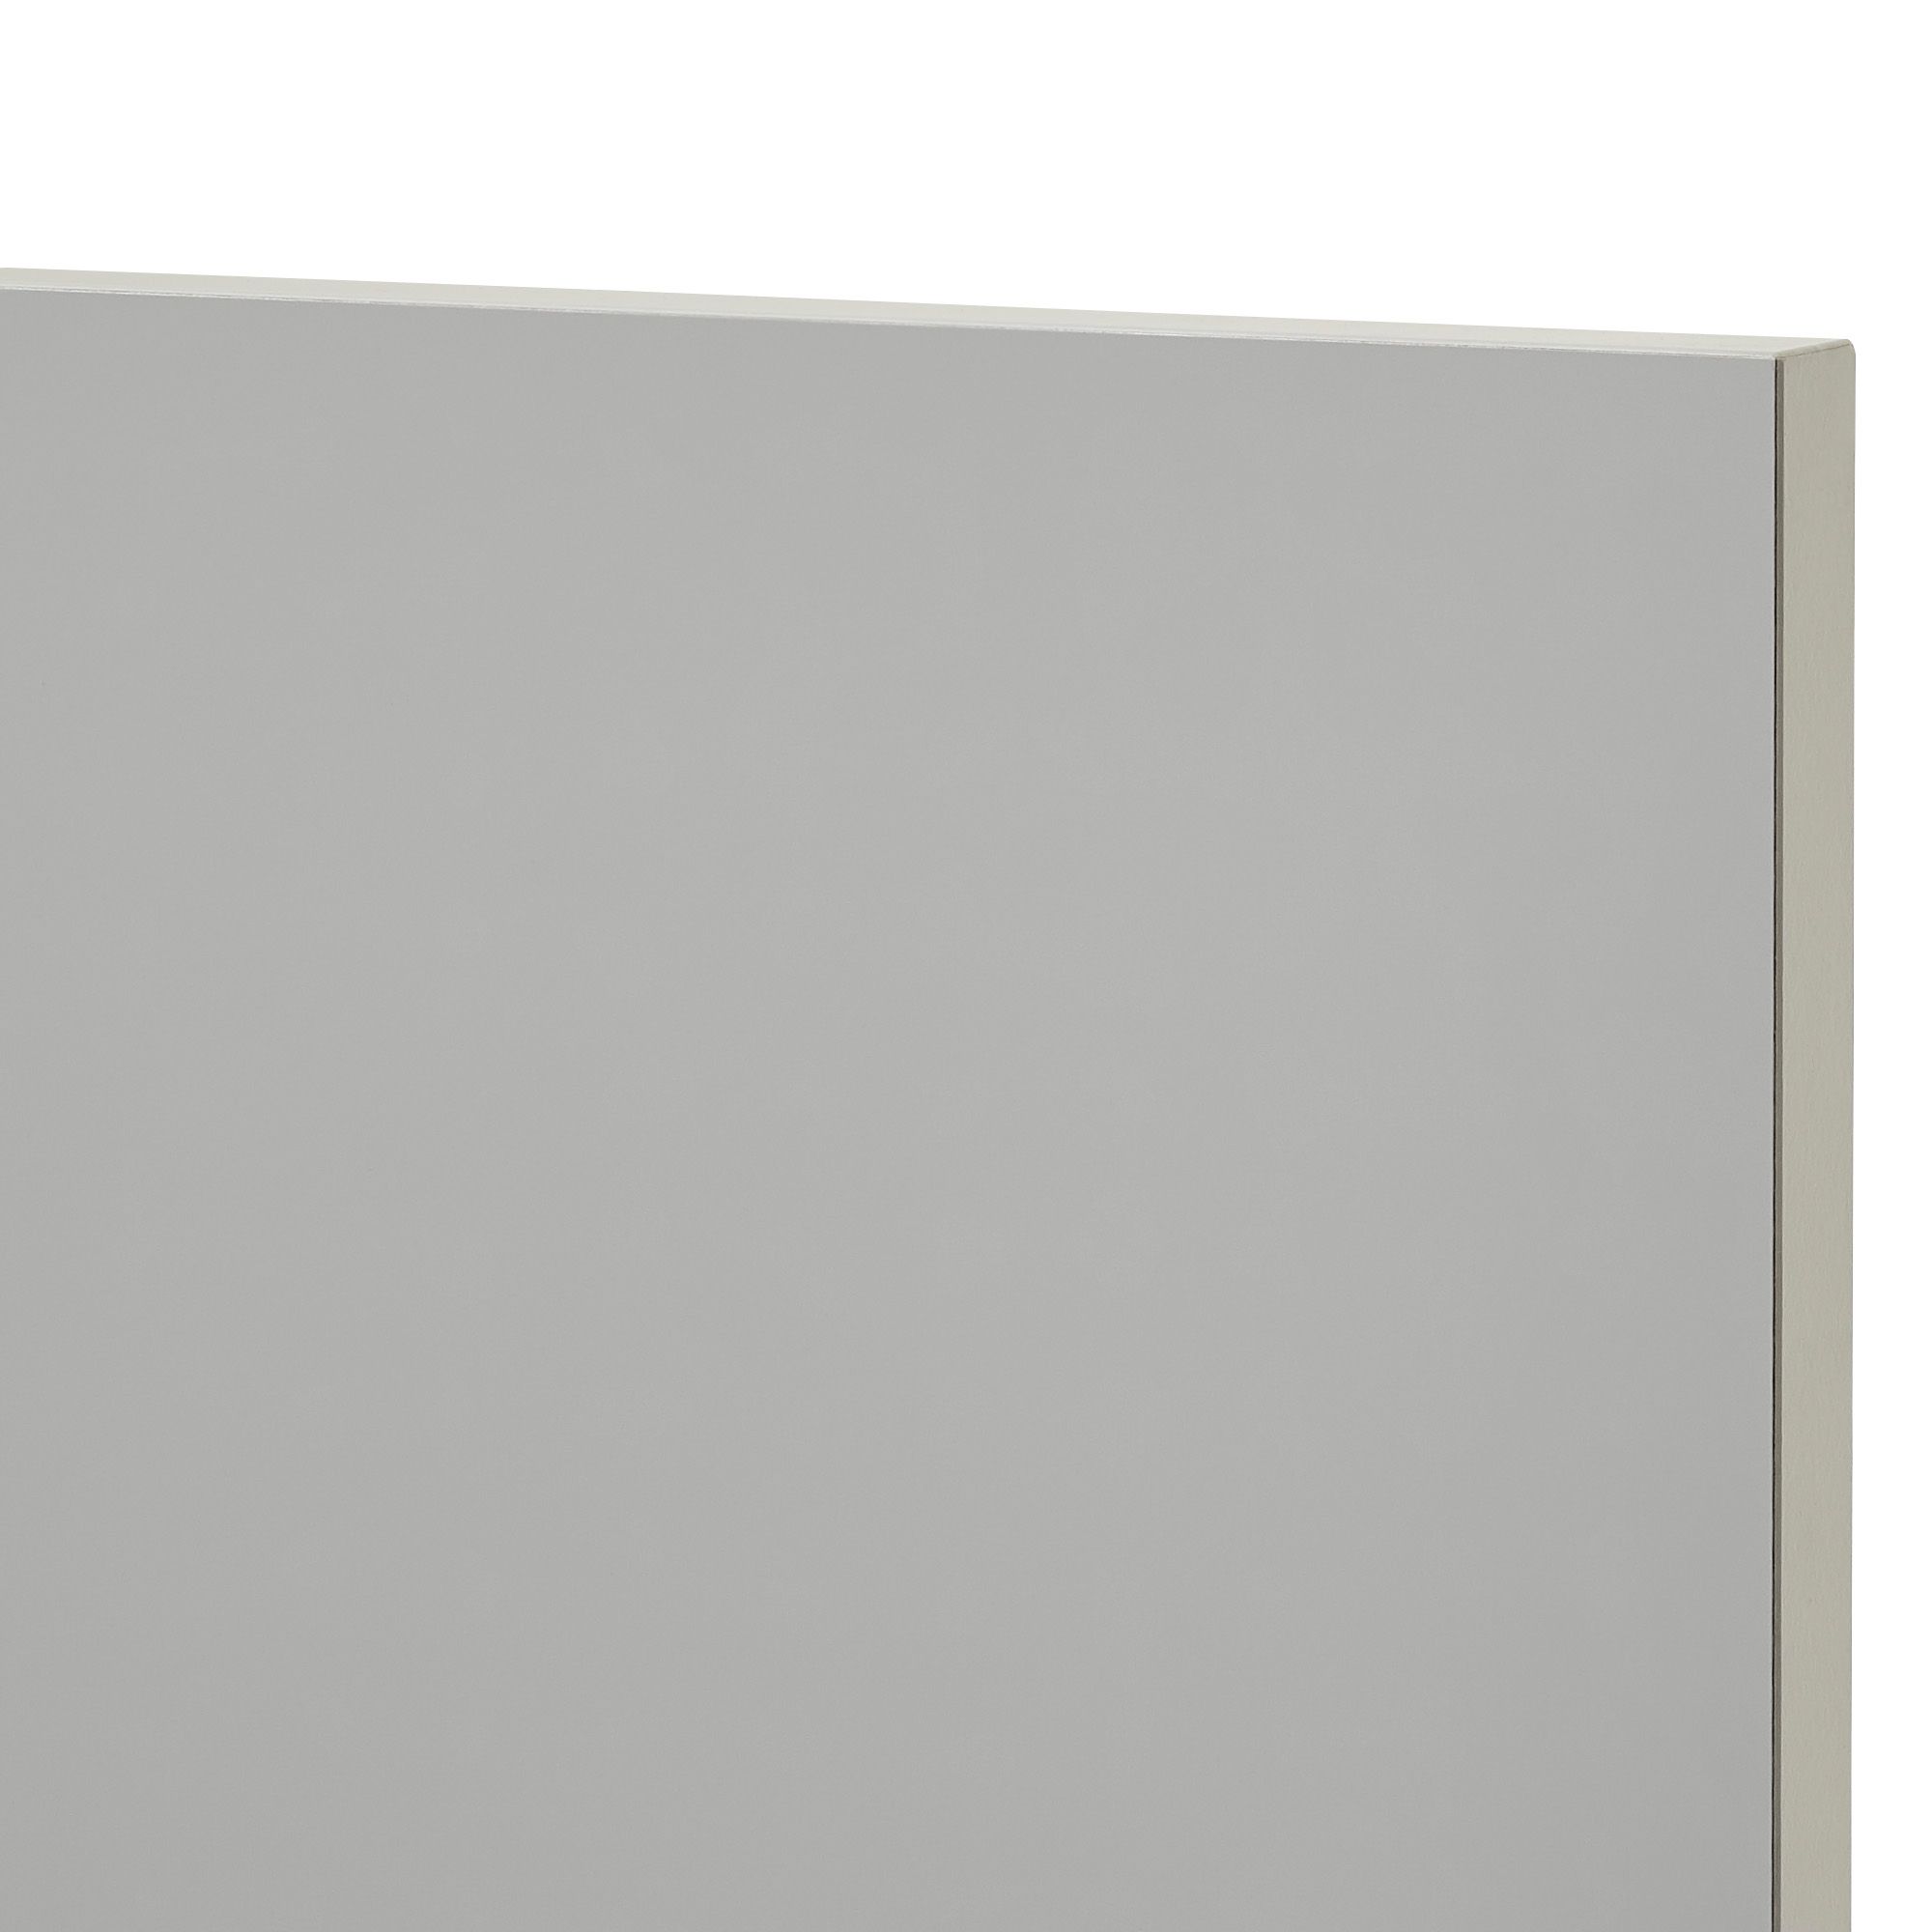 GoodHome Balsamita Matt grey Drawer front, bridging door & bi fold door, (W)600mm (H)356mm (T)16mm